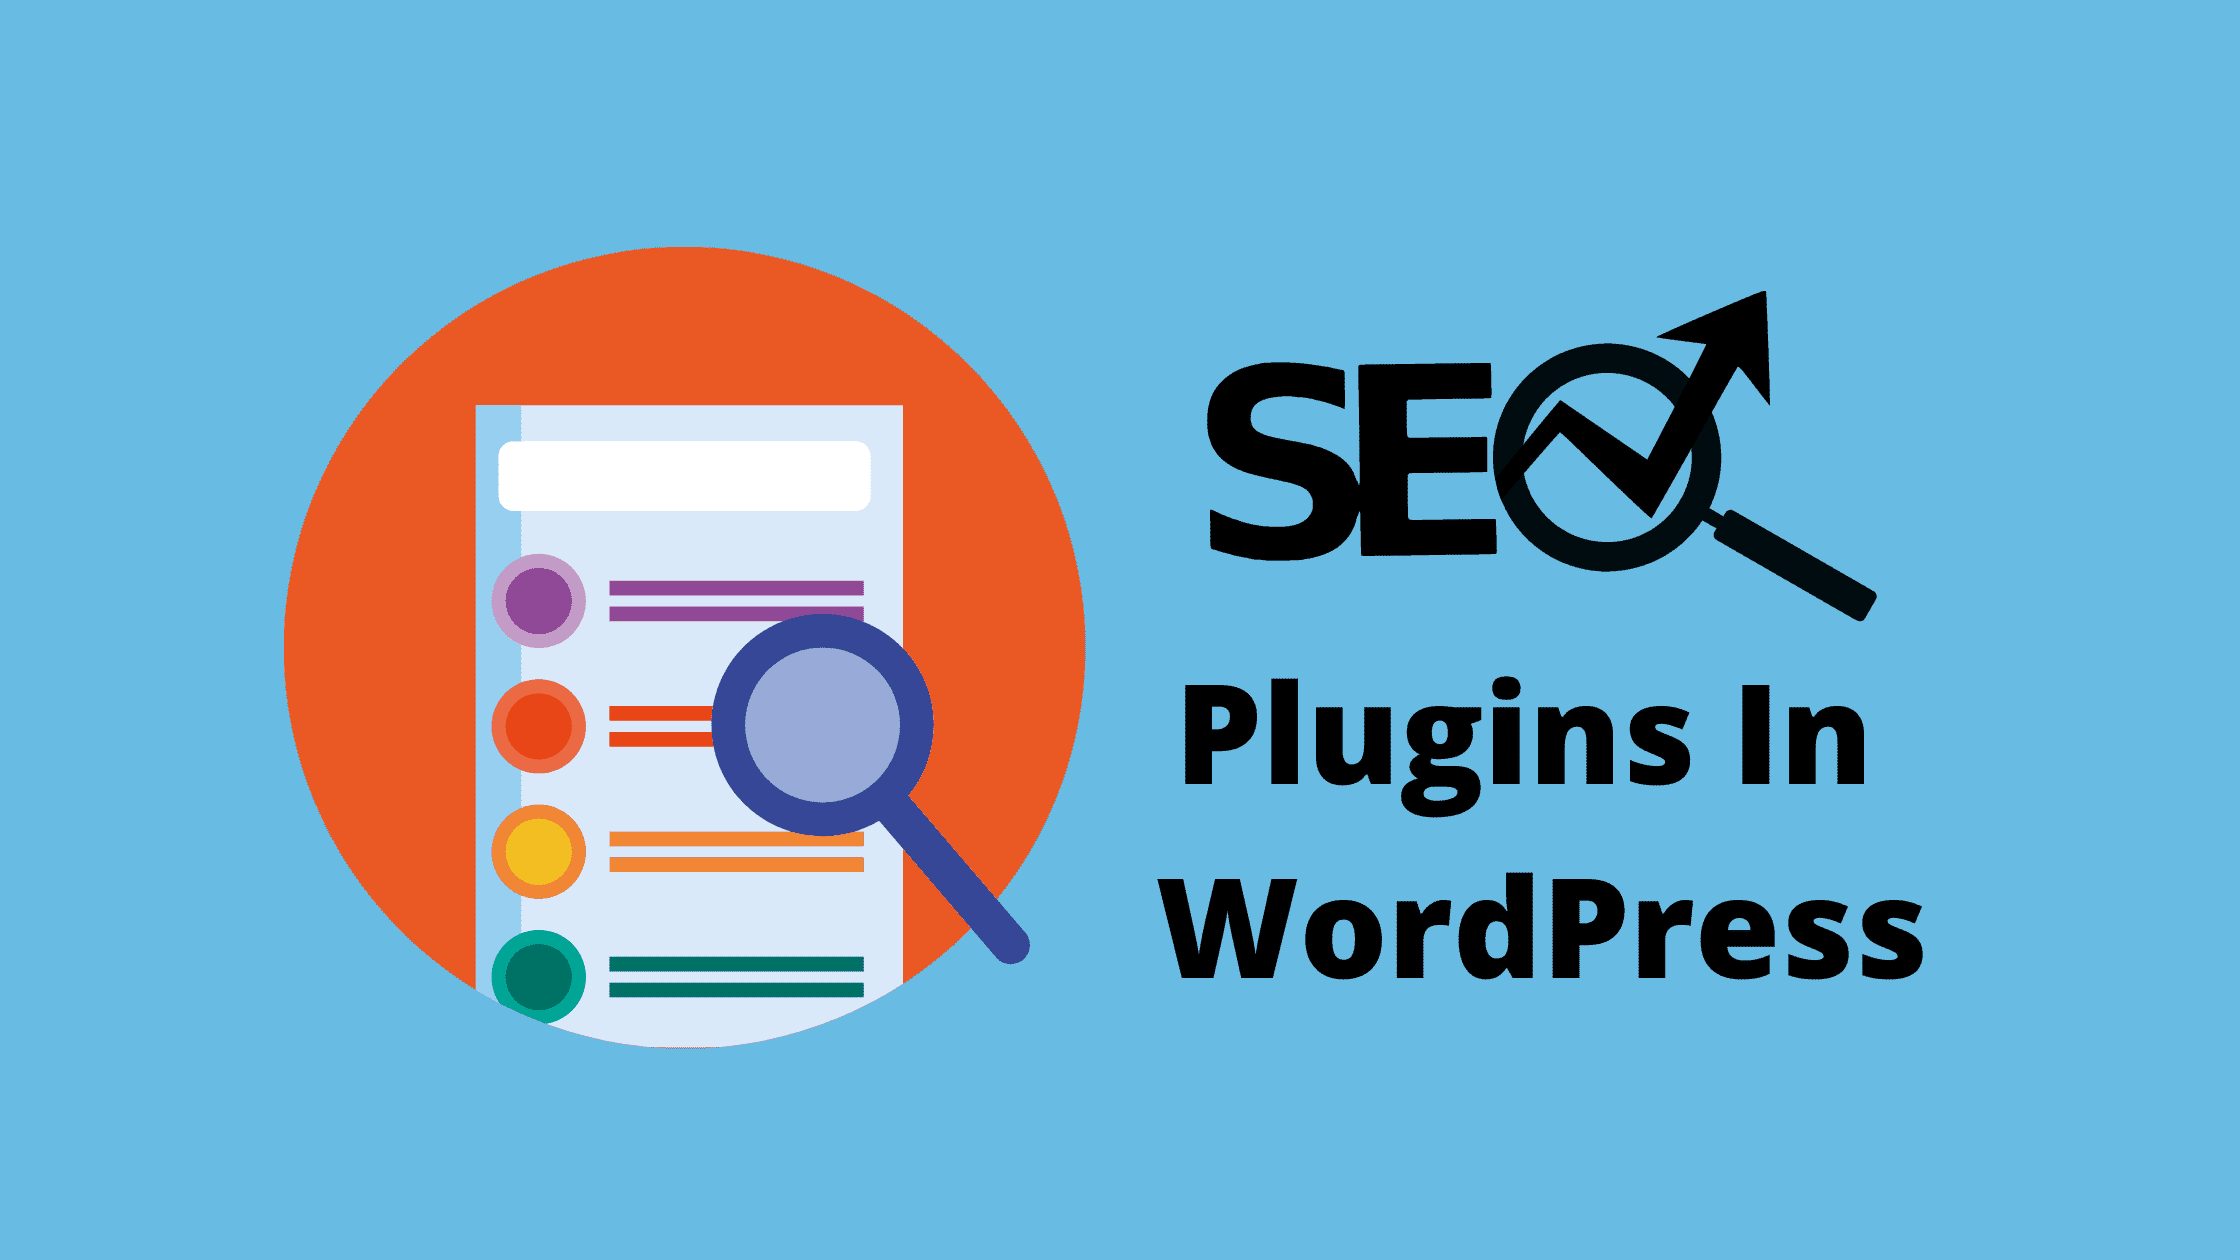 SEO Plugins In WordPress